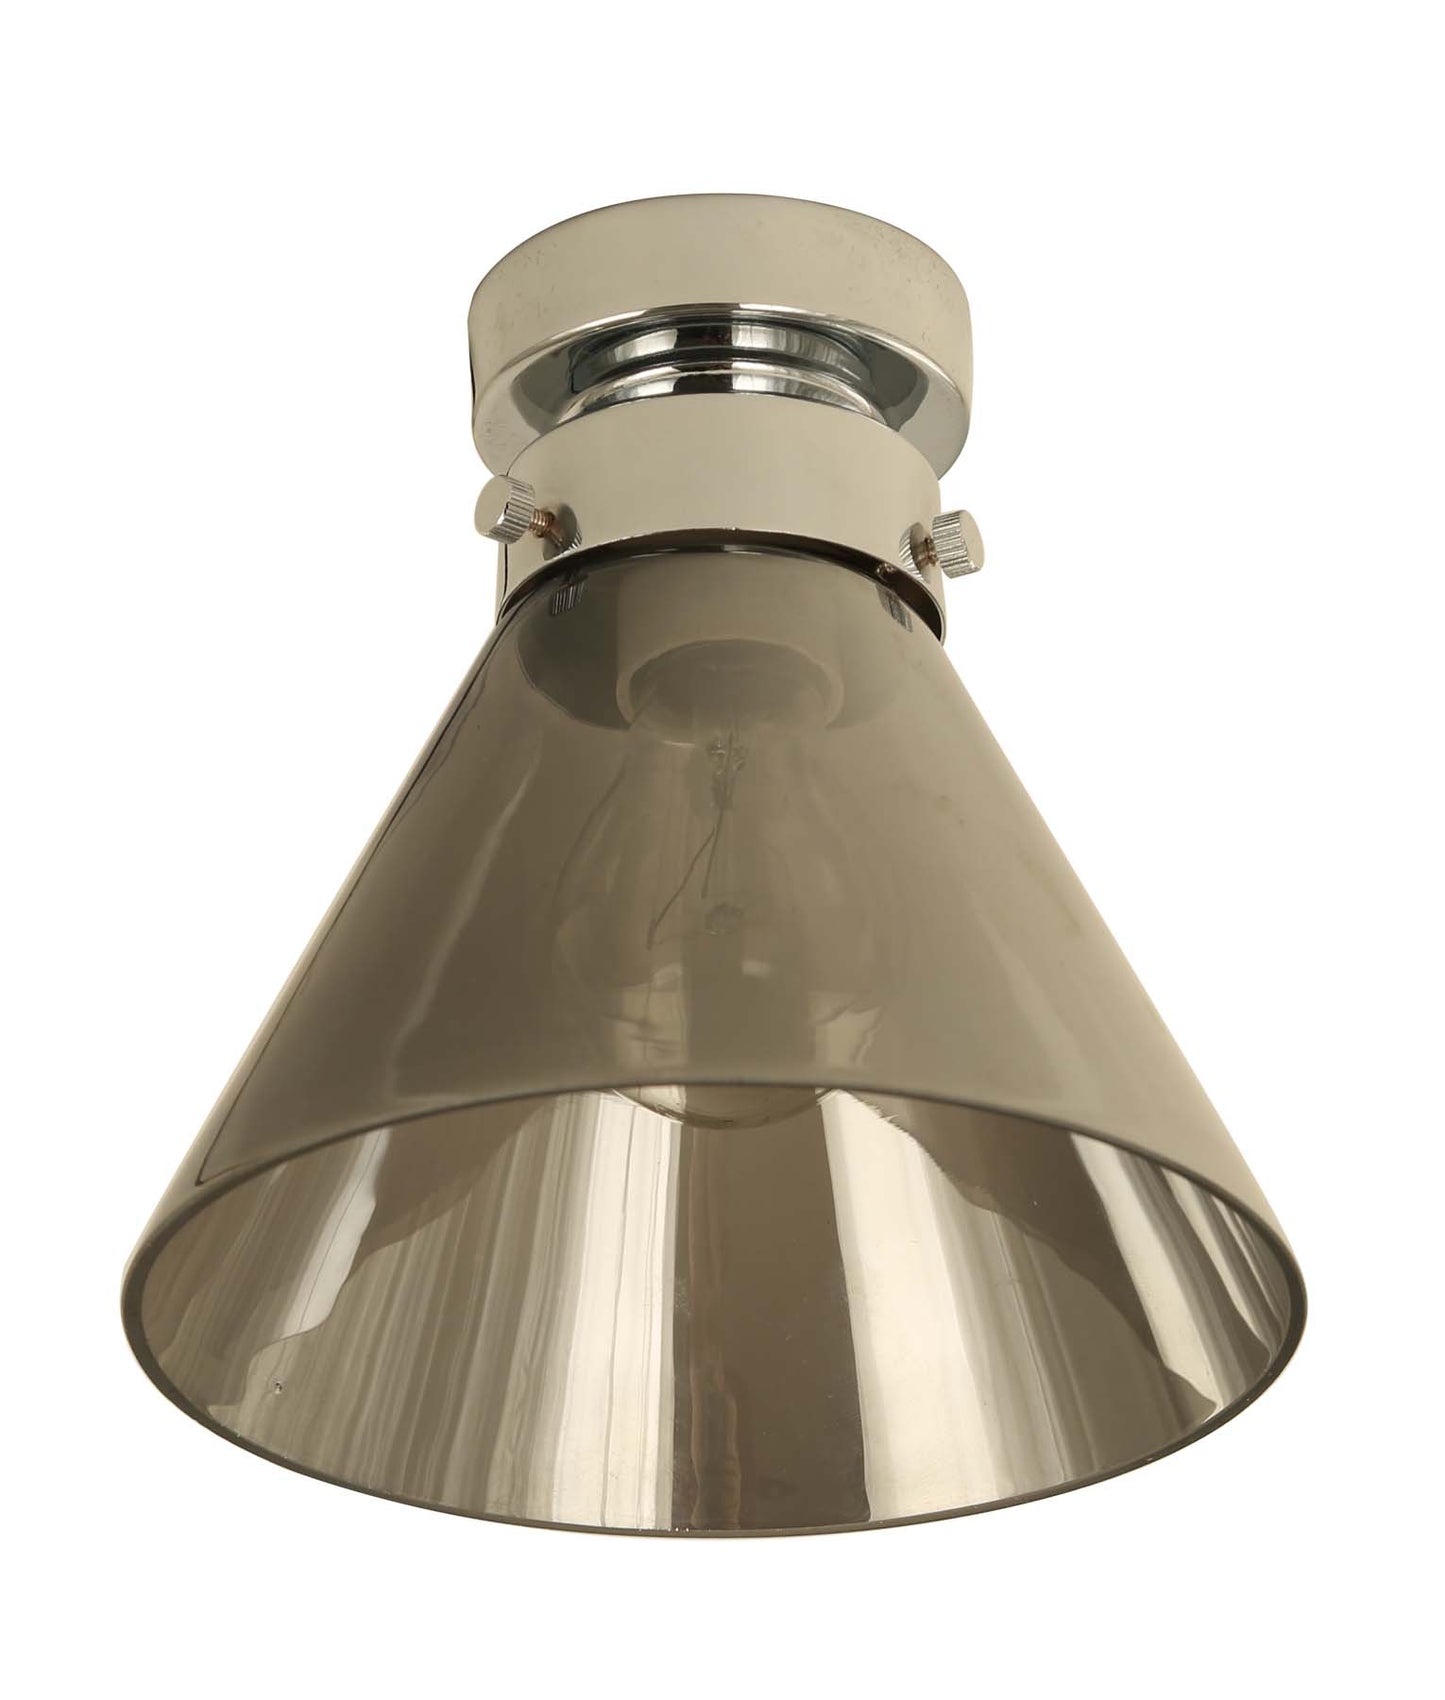 D.I.Y. Batten Fix Ceiling Lights - Small Cone Shape Fixtures